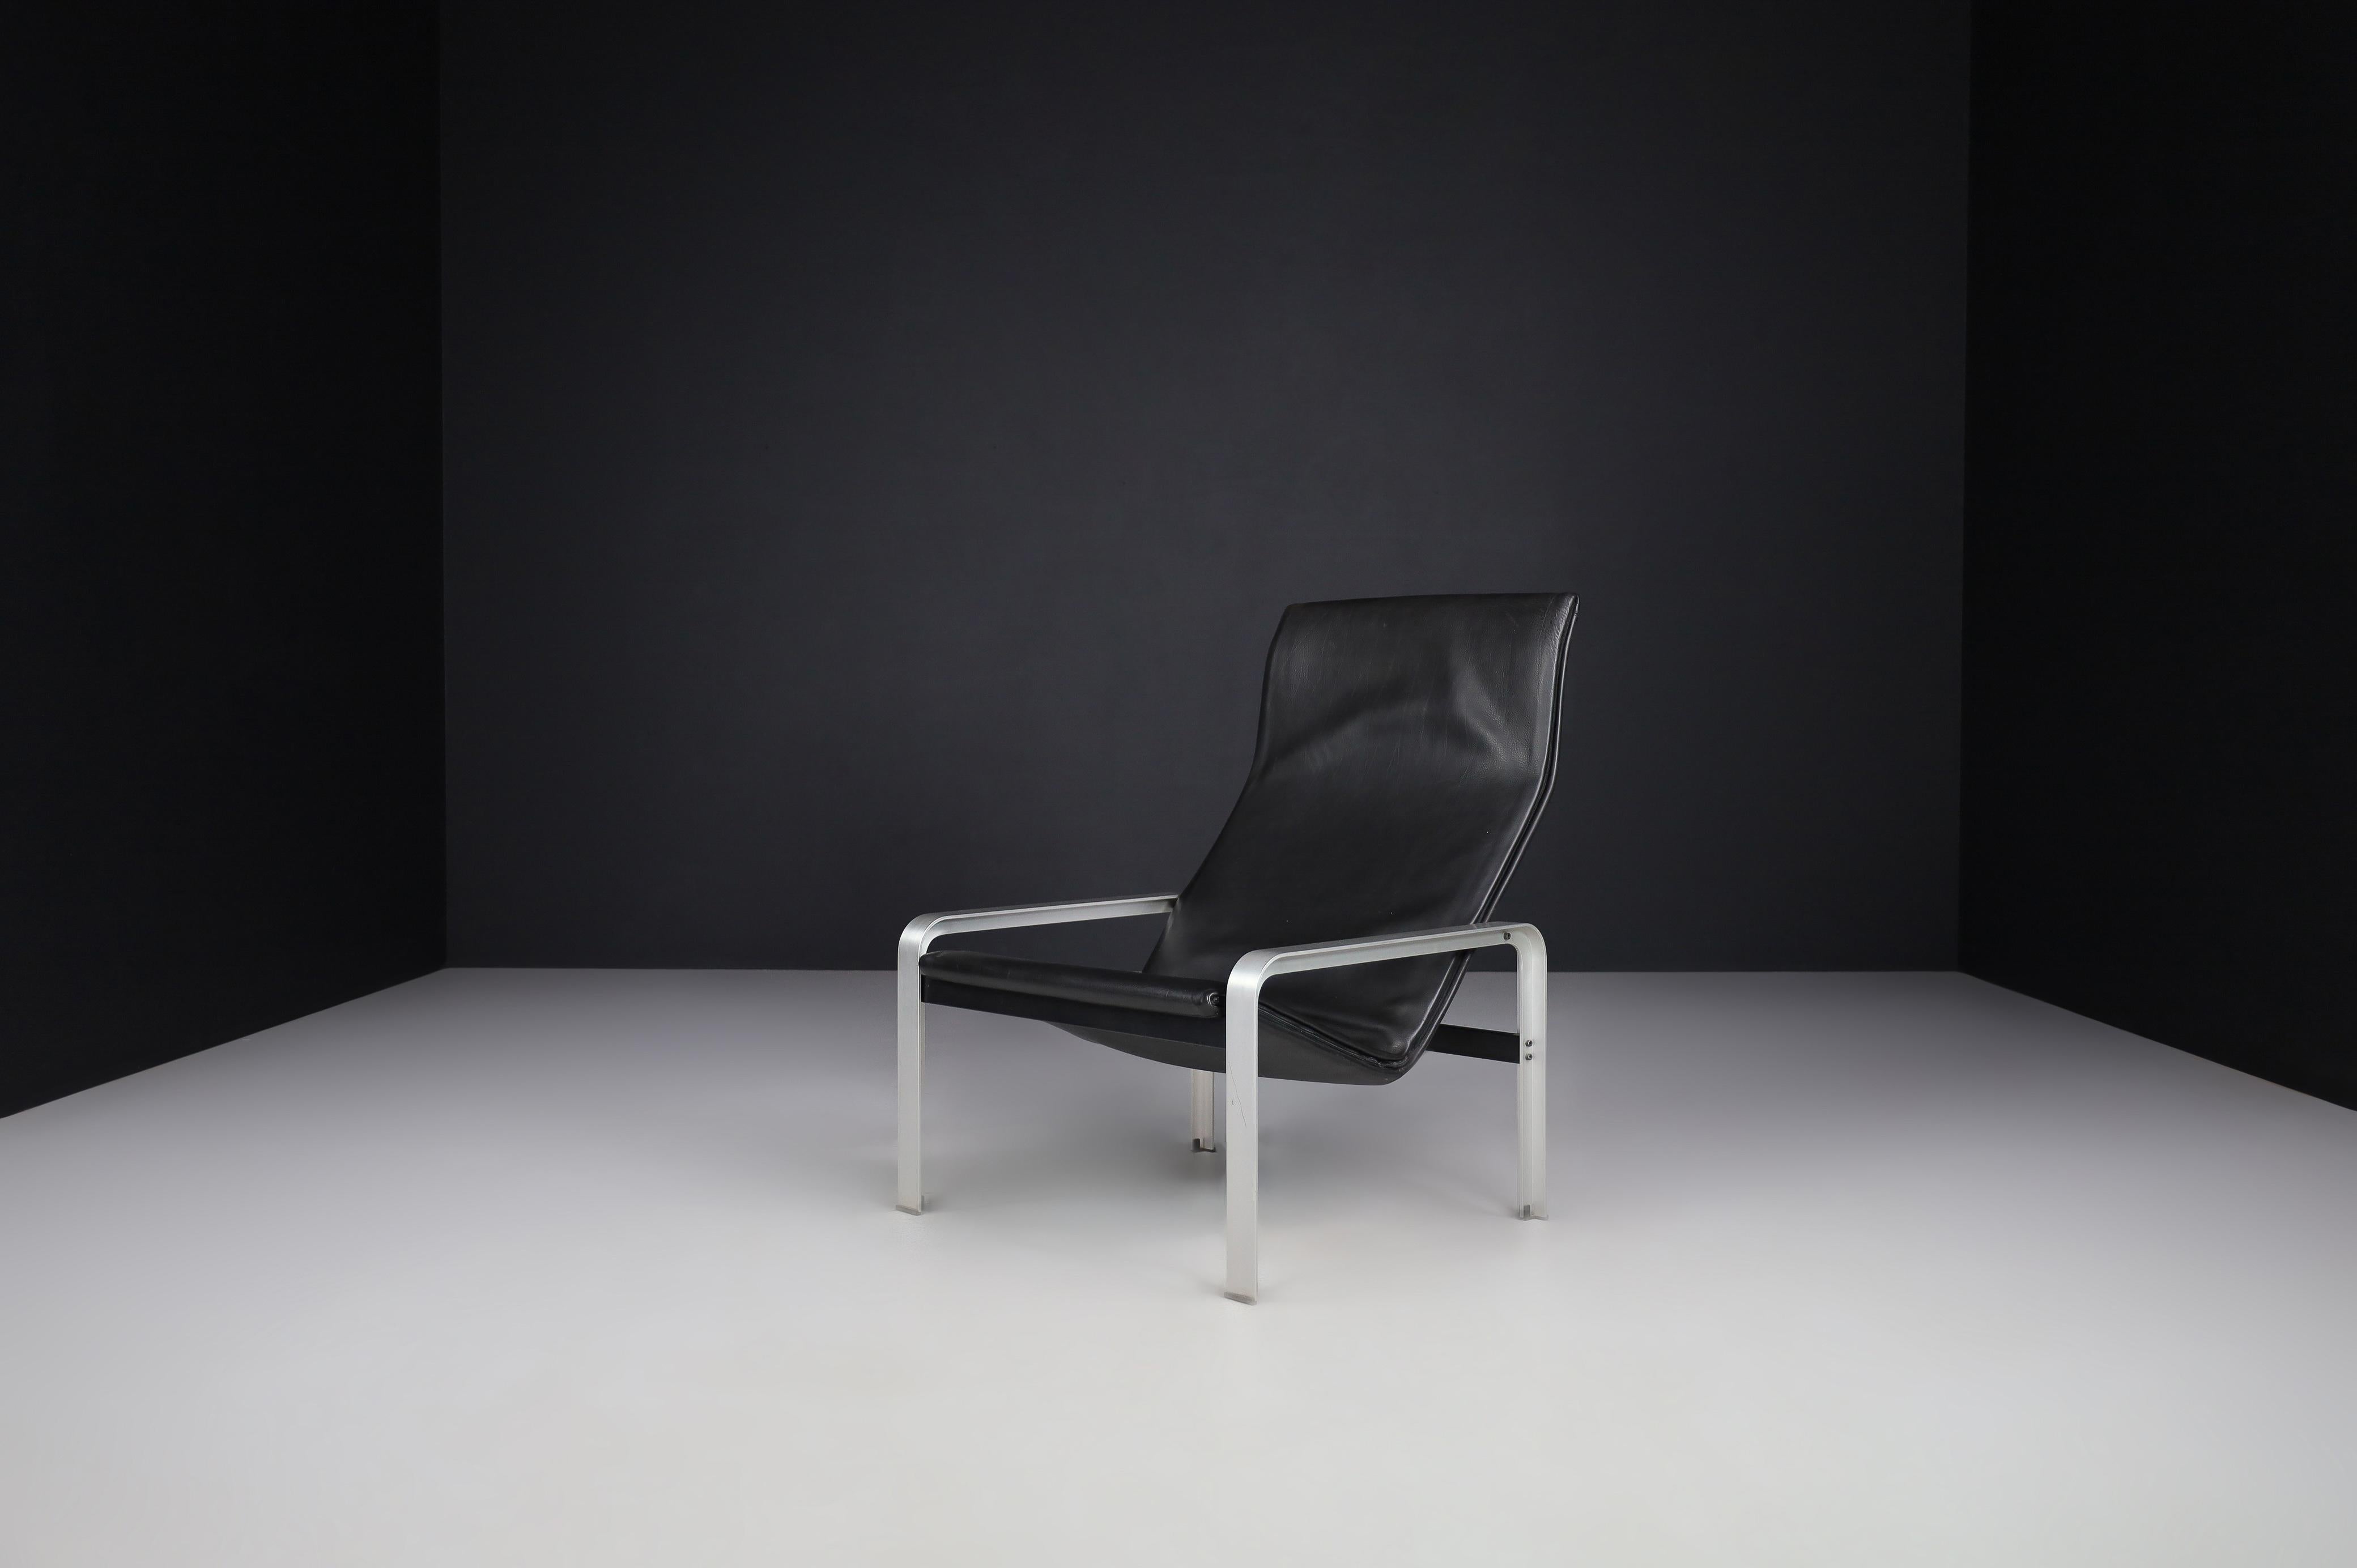 Matteo Grassi, Sessel aus schwarzem Leder, Italien, 1970er-Jahre

Er besteht aus einem Metallrahmen, der mit dickem schwarzem Sattelleder überzogen ist. Zeigt geringe altersbedingte Abnutzung. Äußerst komfortabel, schick und sehr bezeichnend für die